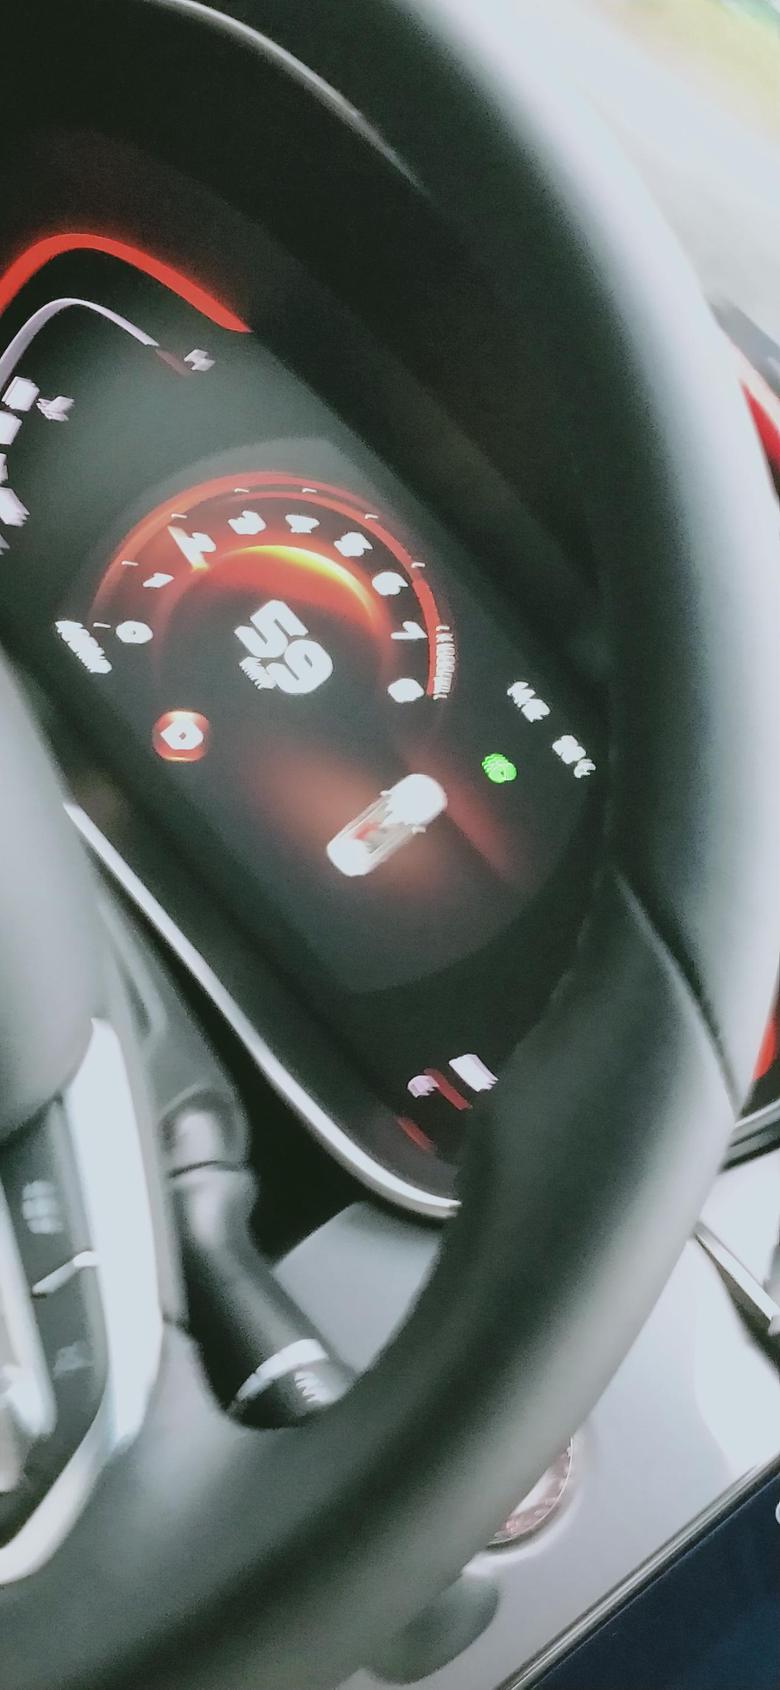 缤瑞 仪表盘上出现一个汽车标志，左后排座出现红色标示，是什么意思